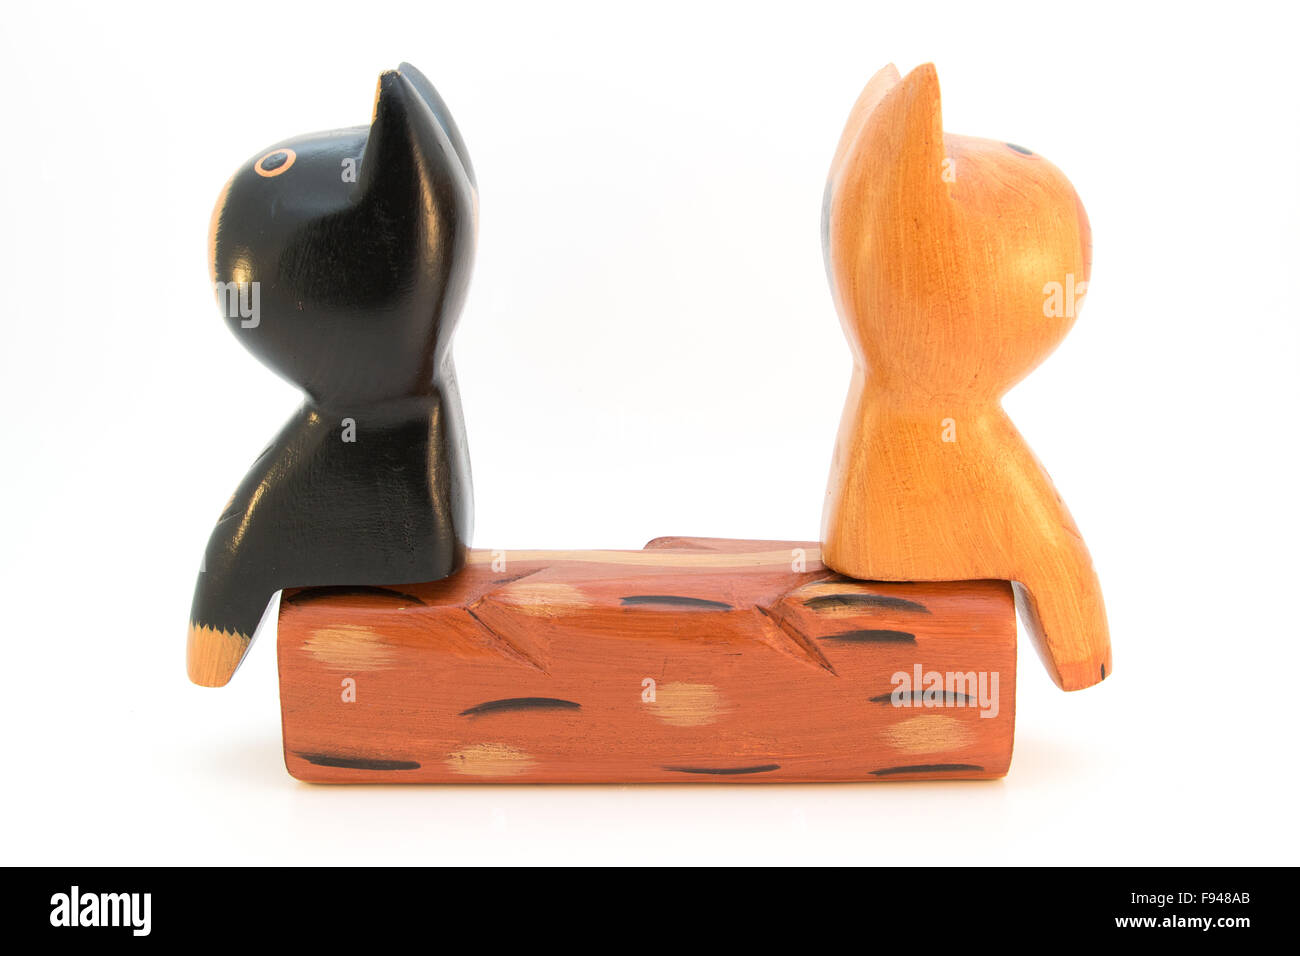 Dos gatos de madera sentados espalda con espalda en un banco Foto de stock